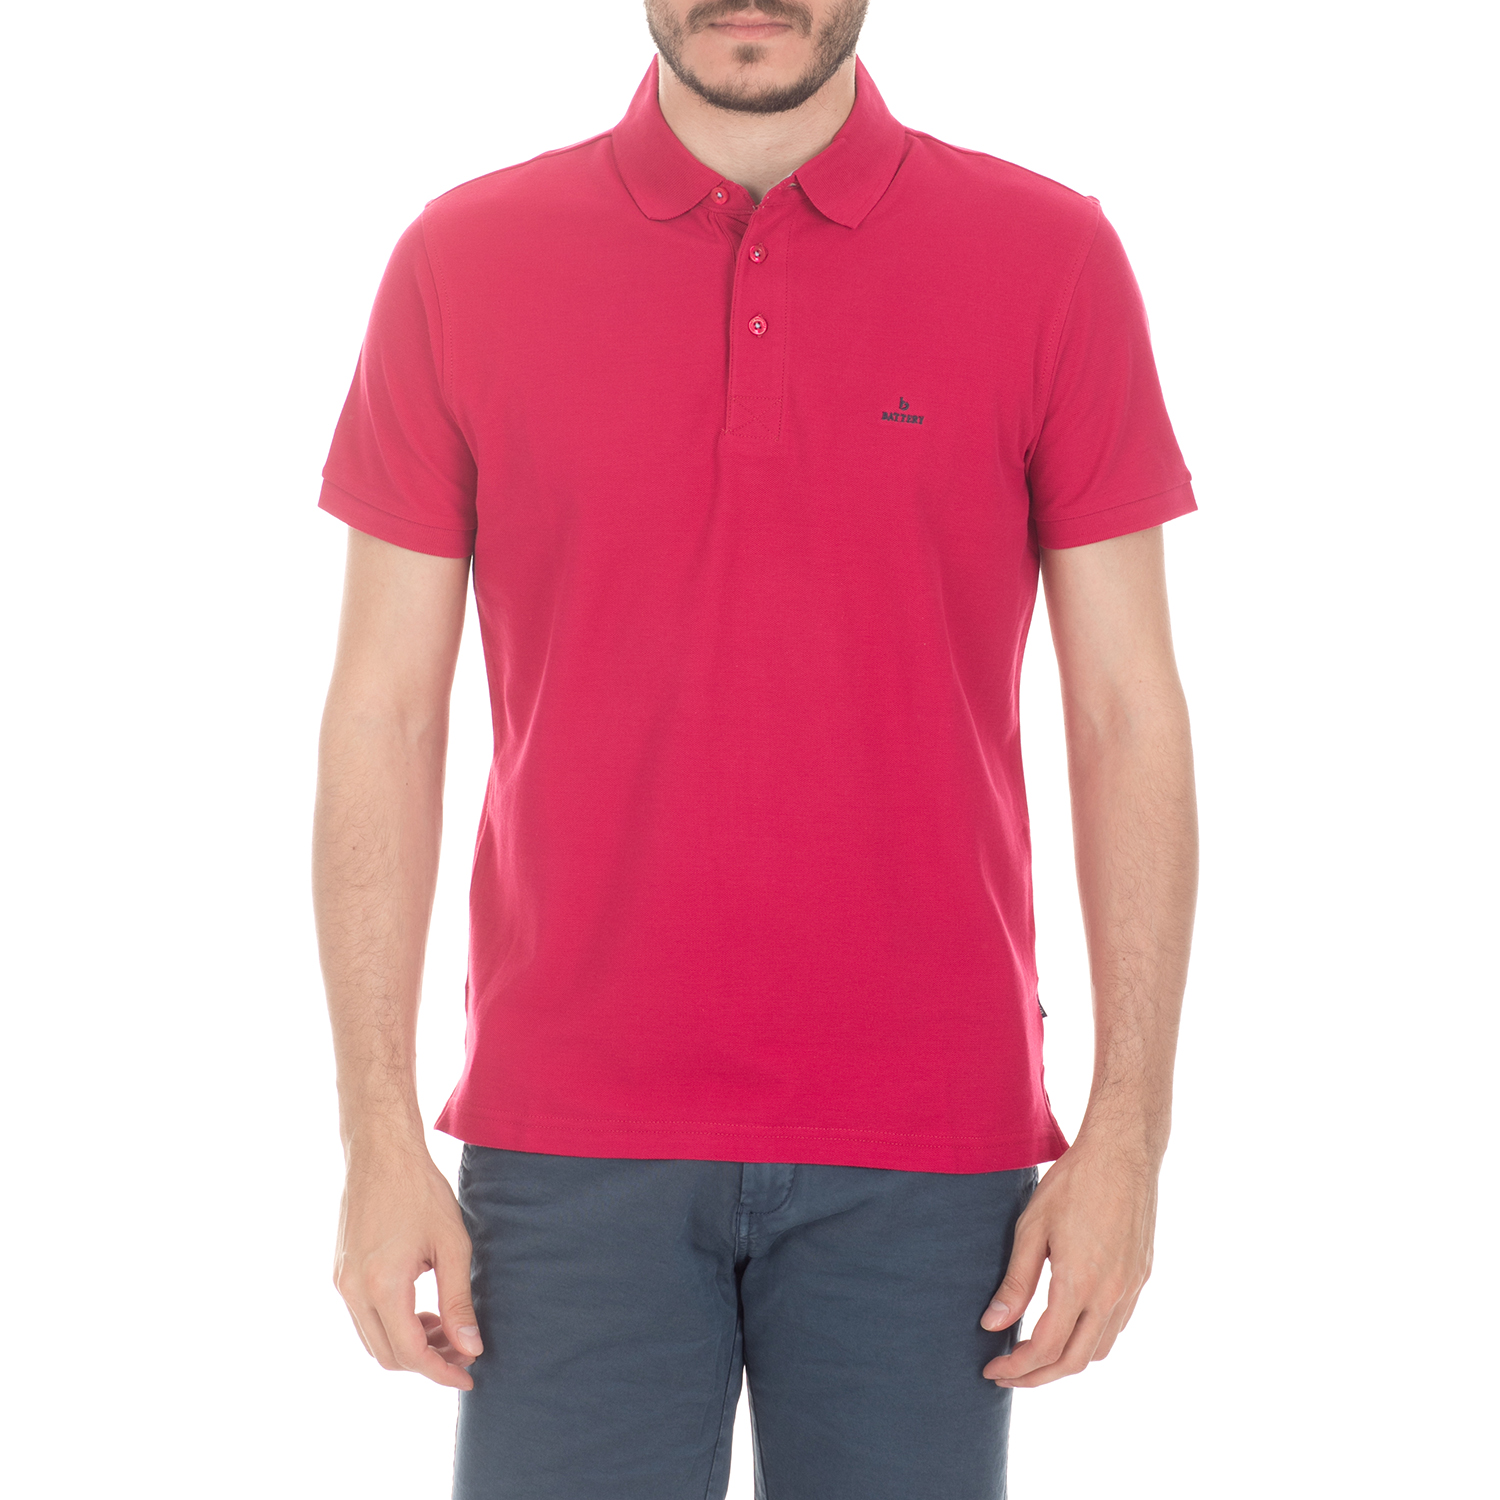 Ανδρικά/Ρούχα/Μπλούζες/Πόλο BATTERY - Ανδρική μπλούζα BATTERY κόκκινη